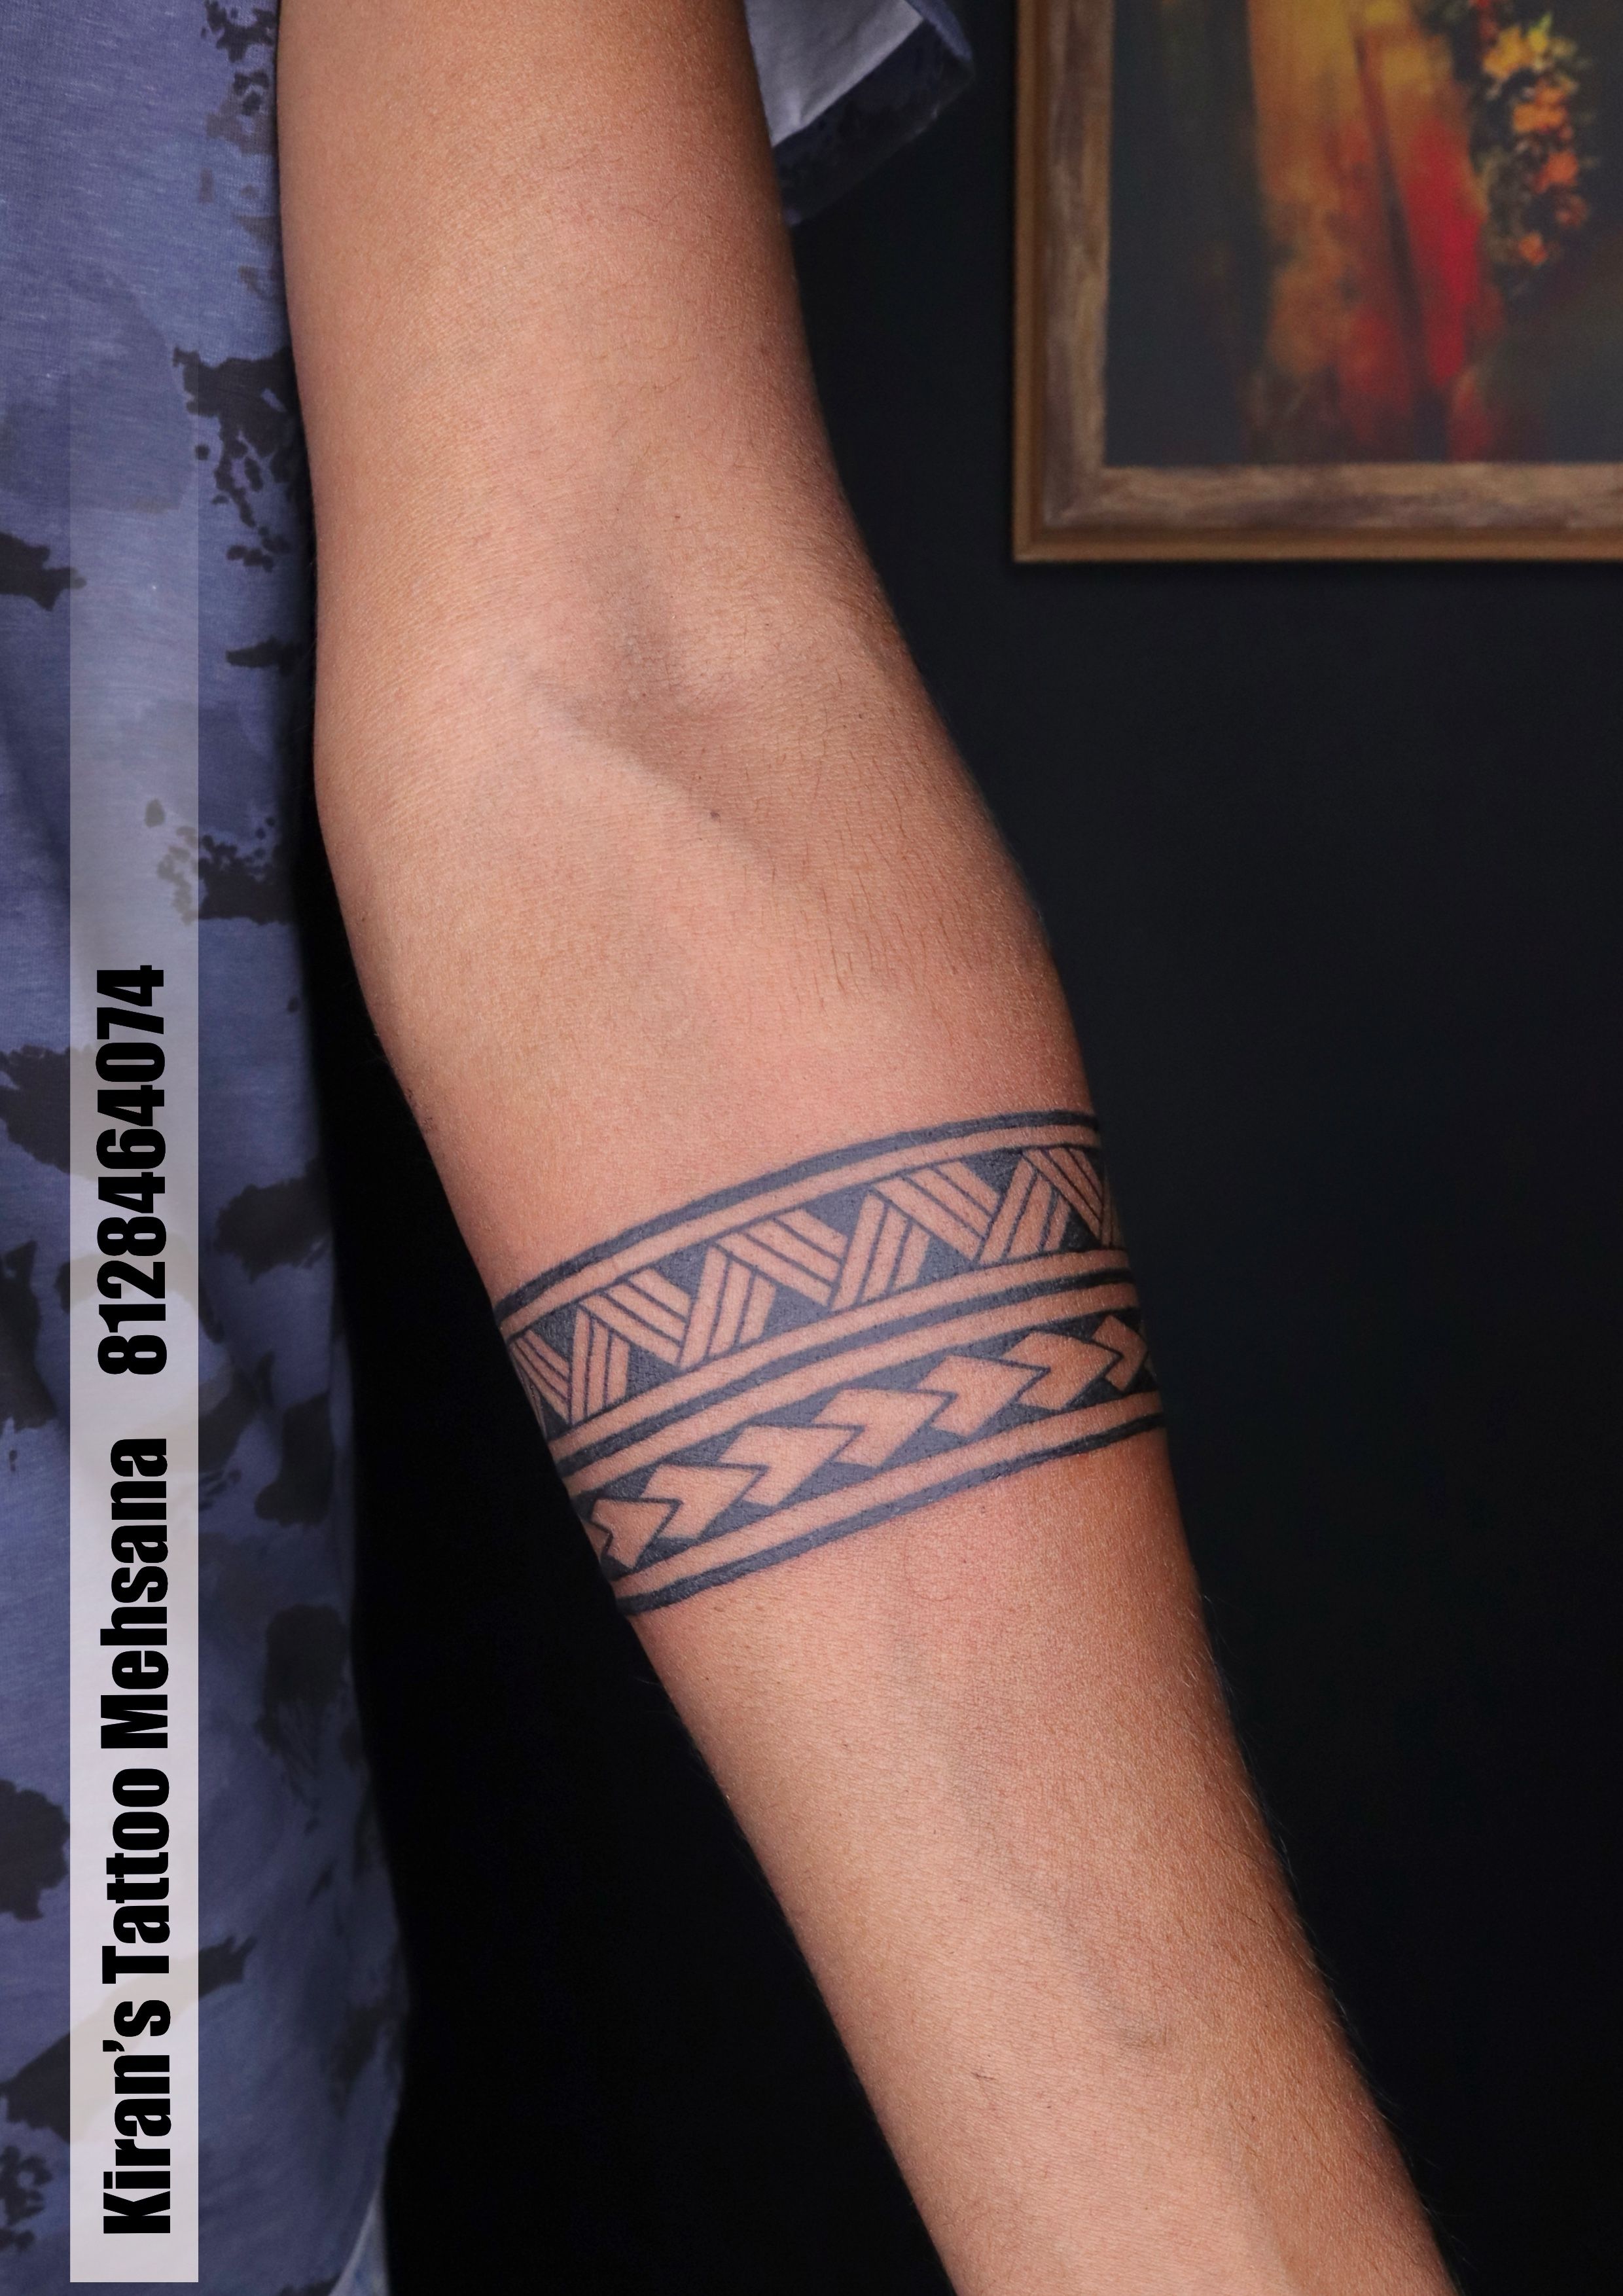 Armband Tattoo | Arm band tattoo, Band tattoo, Tattoos